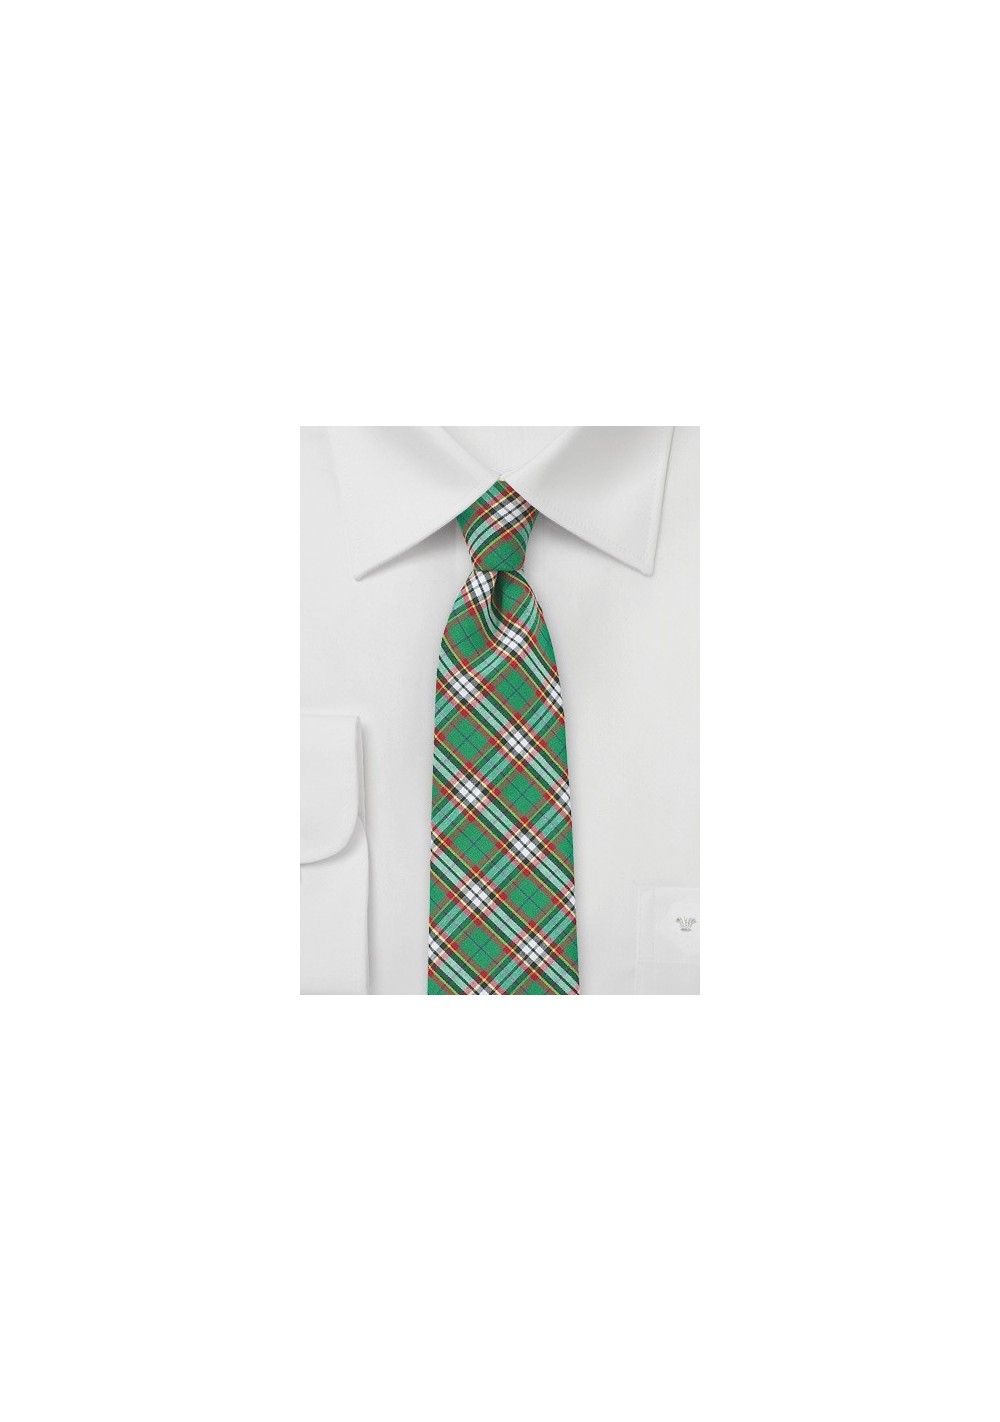 Green and Red Tartan Plaid Cotton Necktie